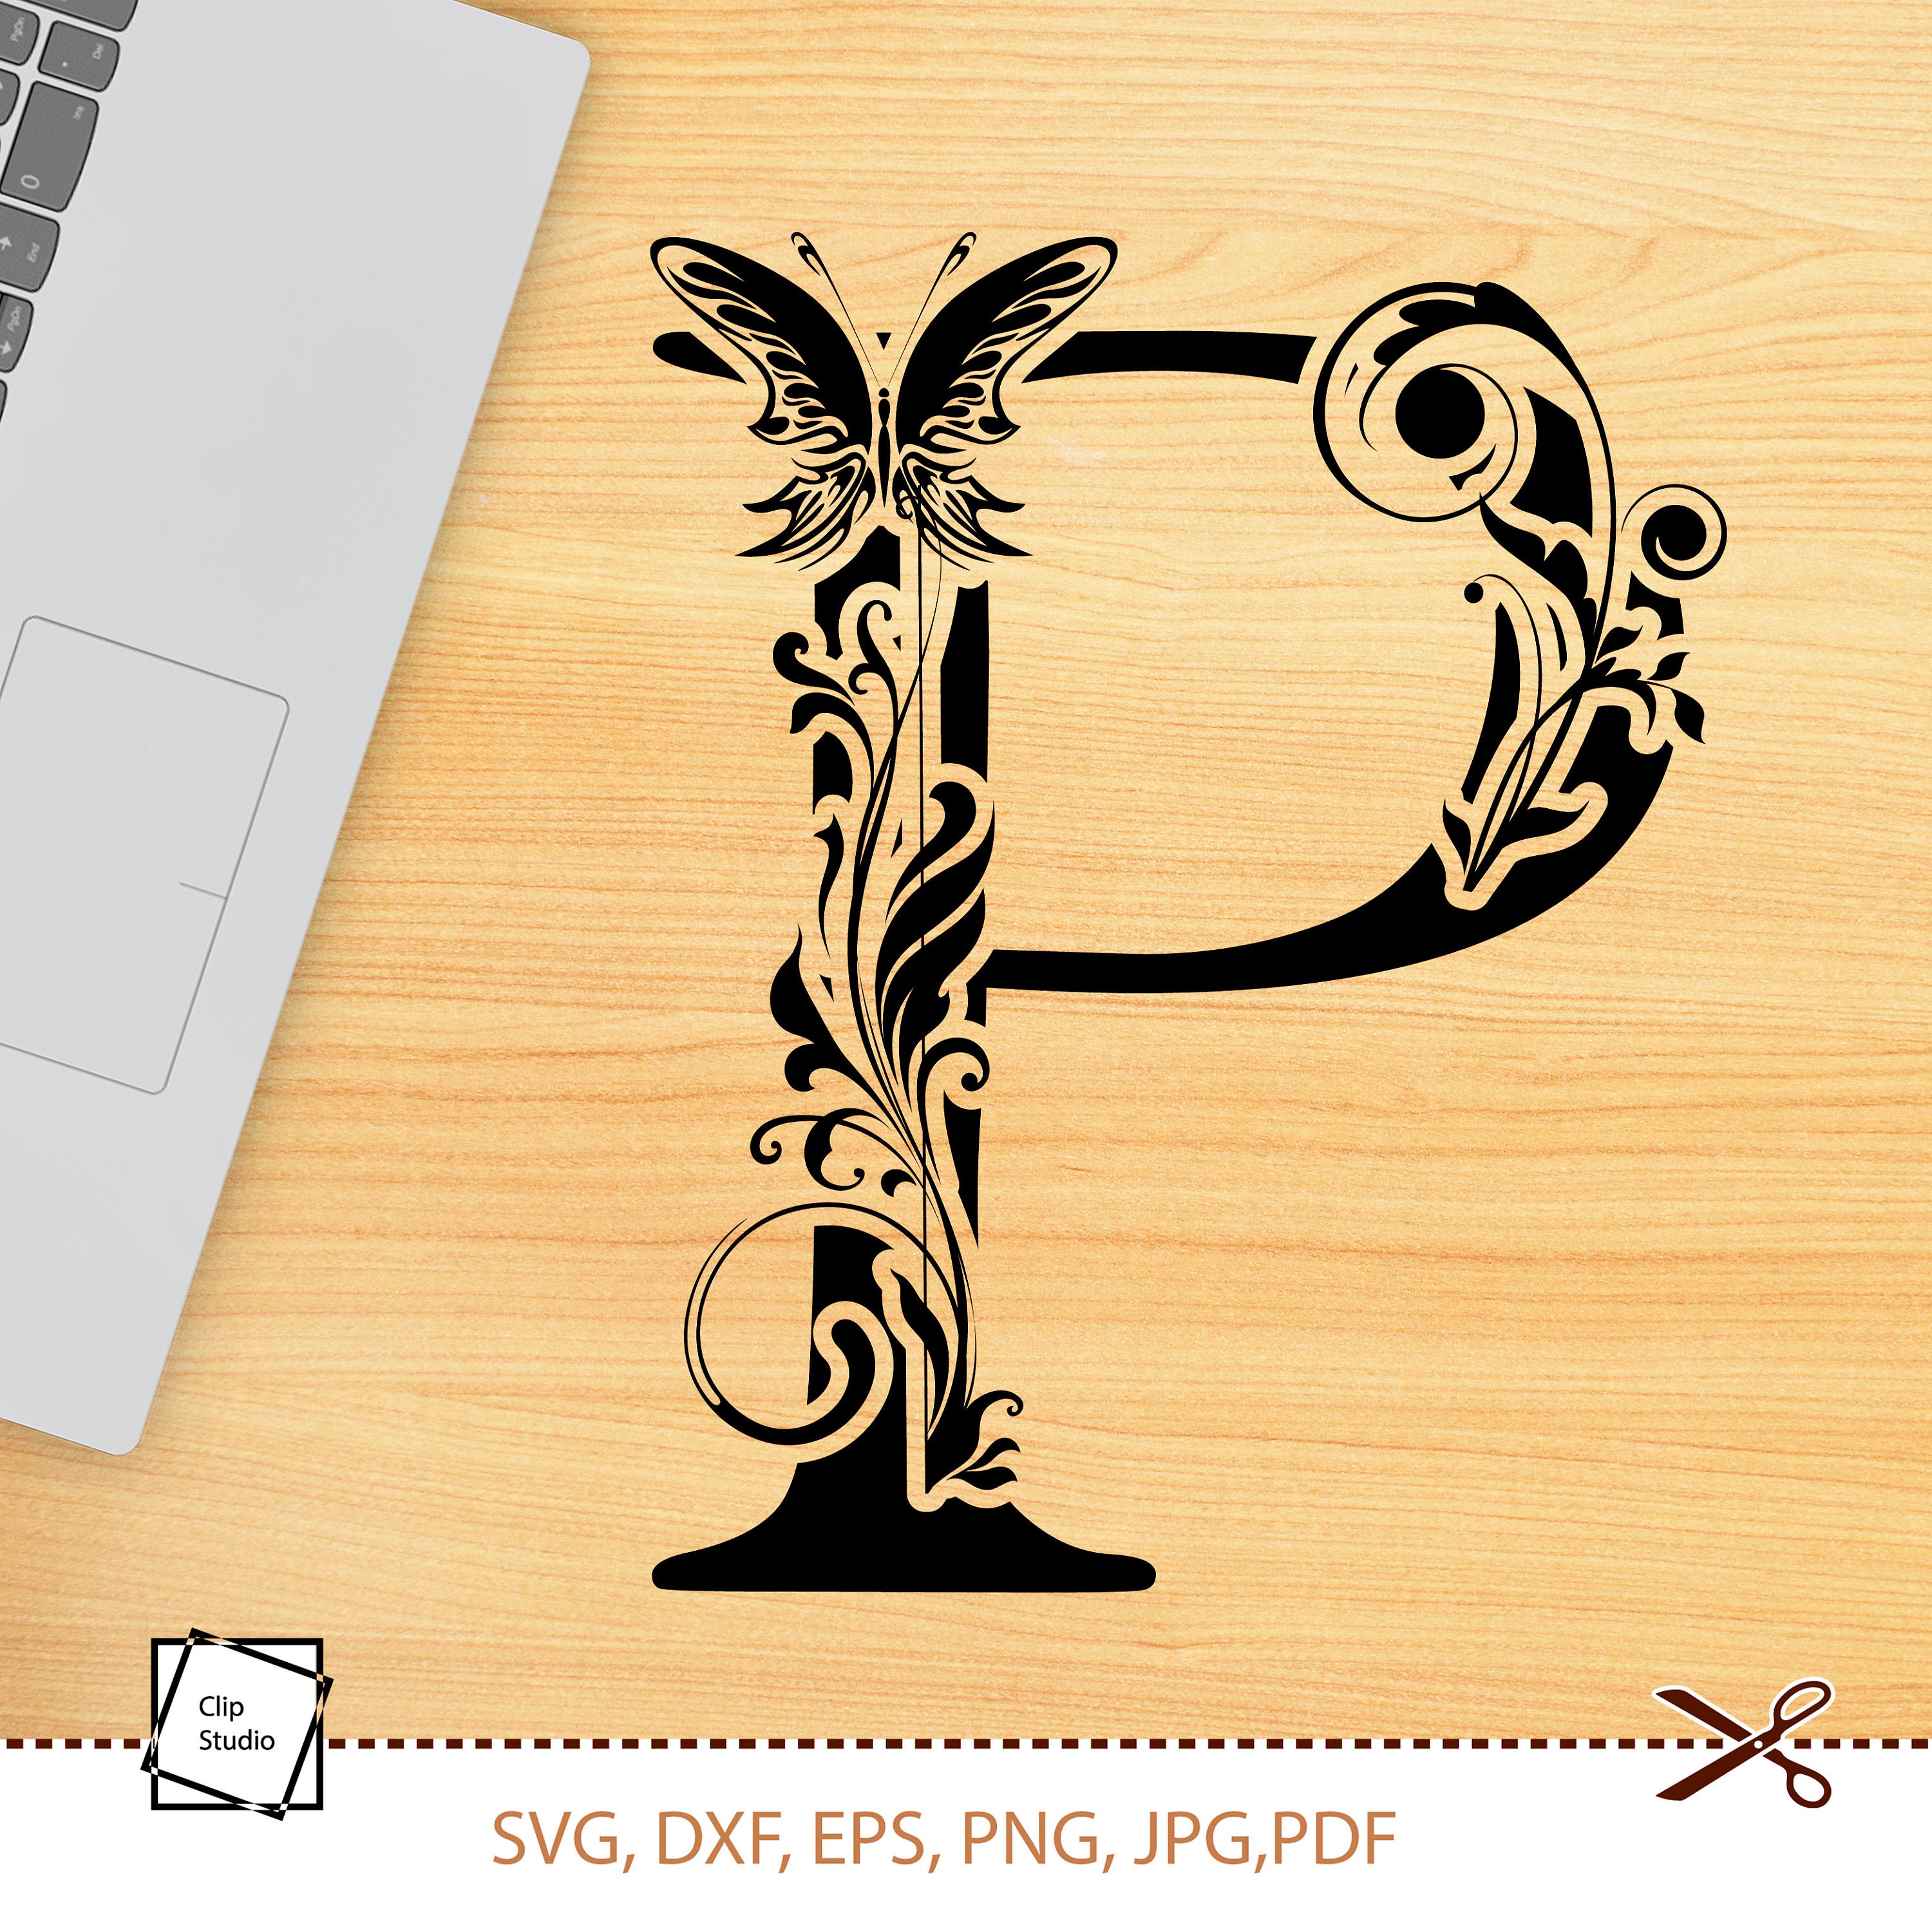 Download Botanical alphabet svg. Floral letter P svg. Cut file SVG | Etsy